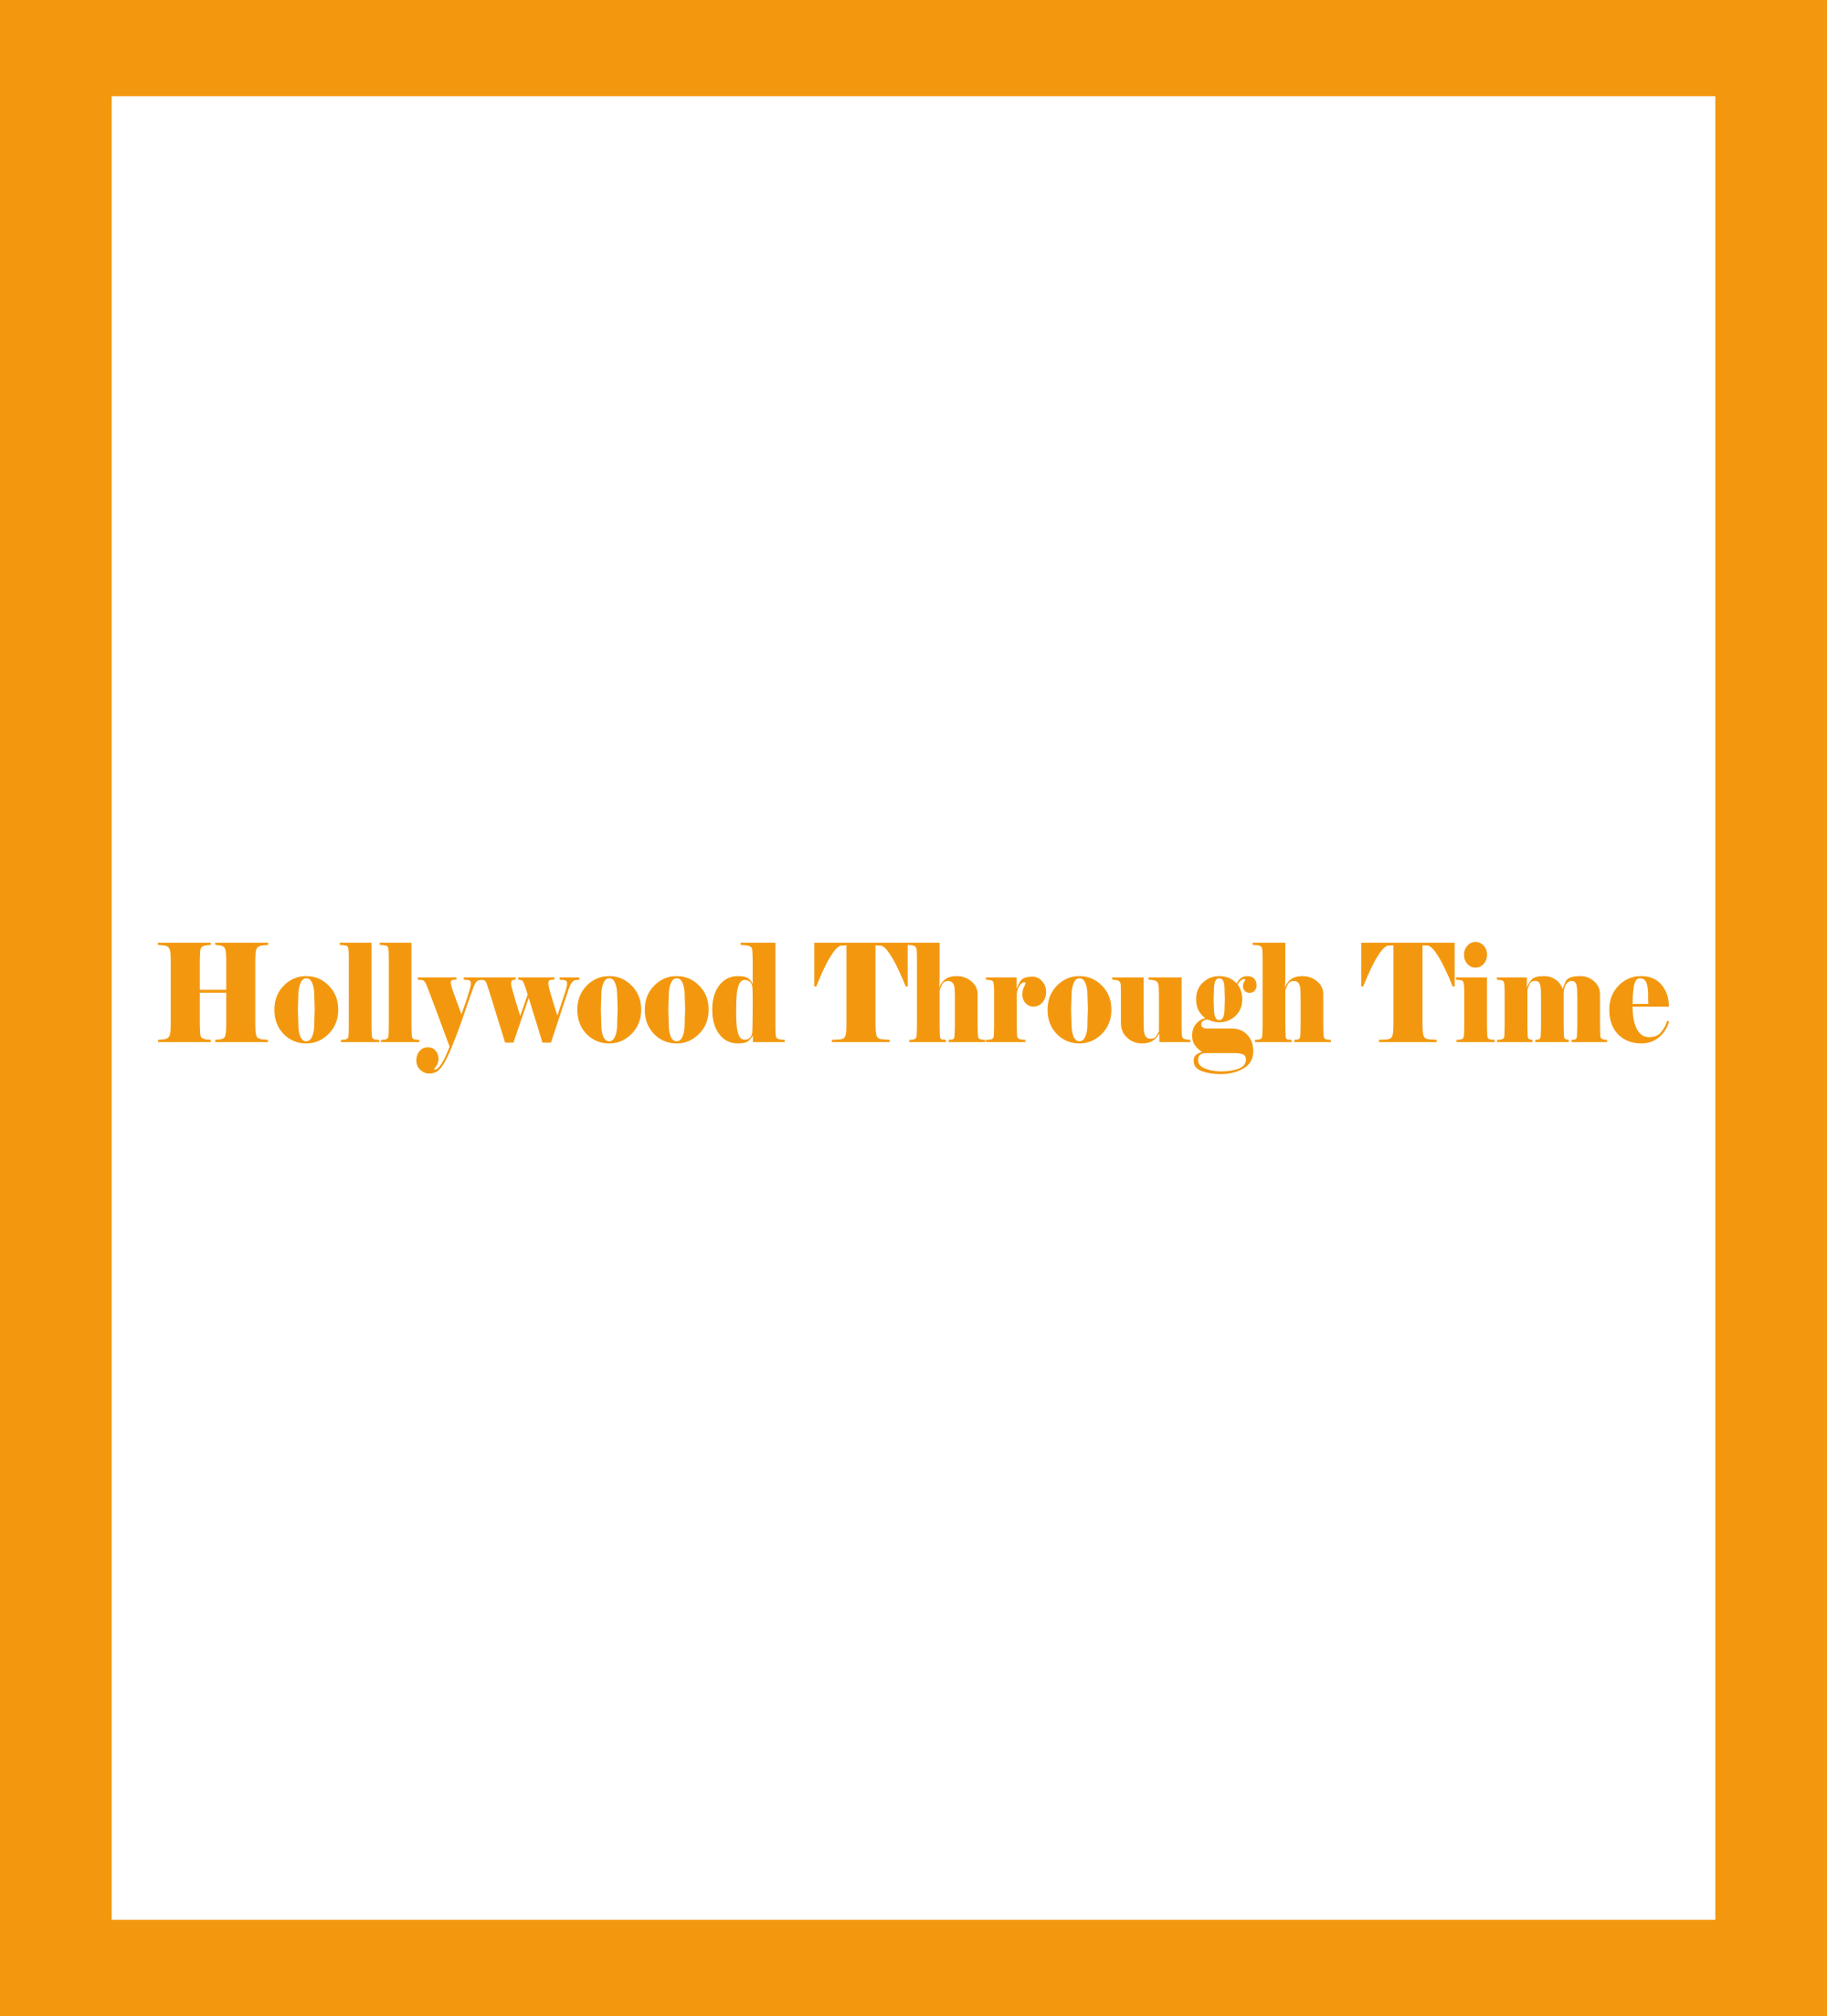 Caratula de Hollywood Through Time (Hollywood a través del tiempo) 